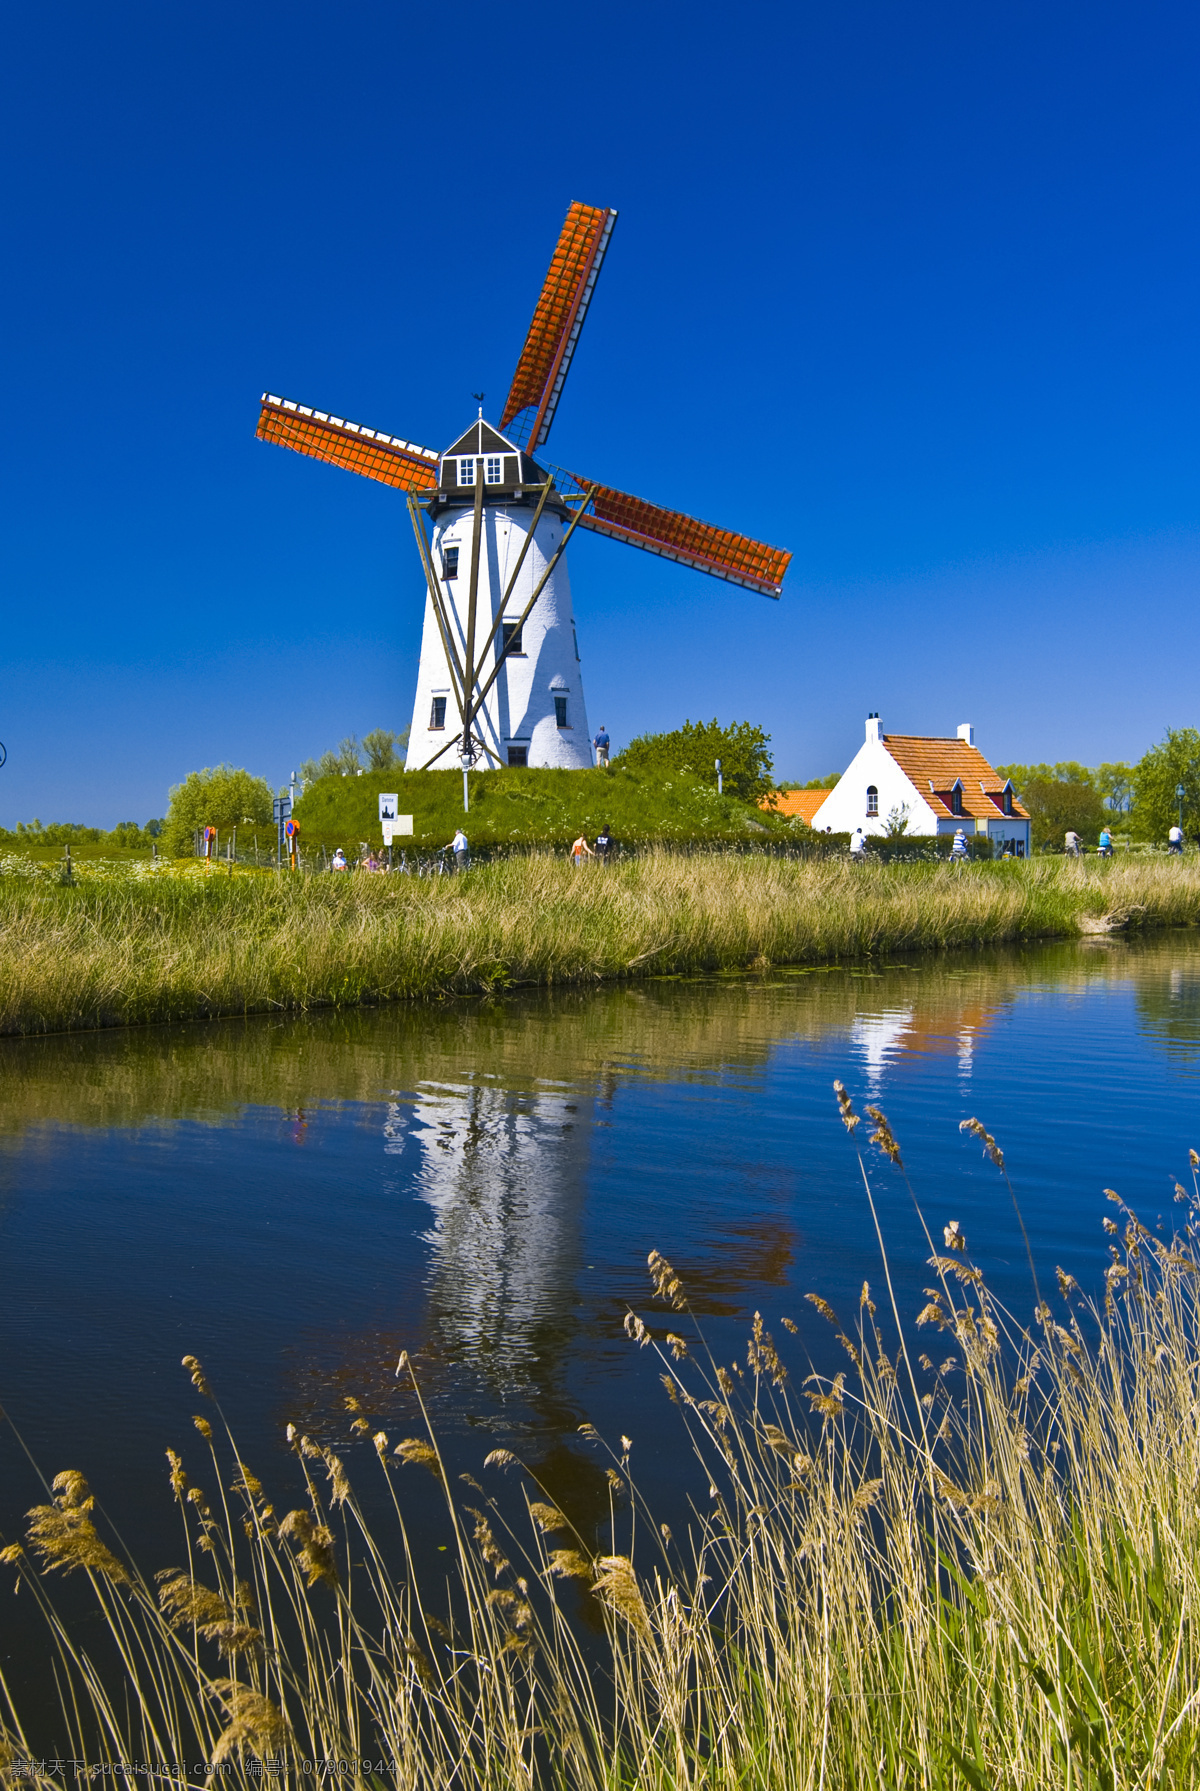 荷兰风车 荷兰 风车 蓝天 绿草 溪流 田园 田野 风光 欧洲 乡村 农场 自然景观 自然风景